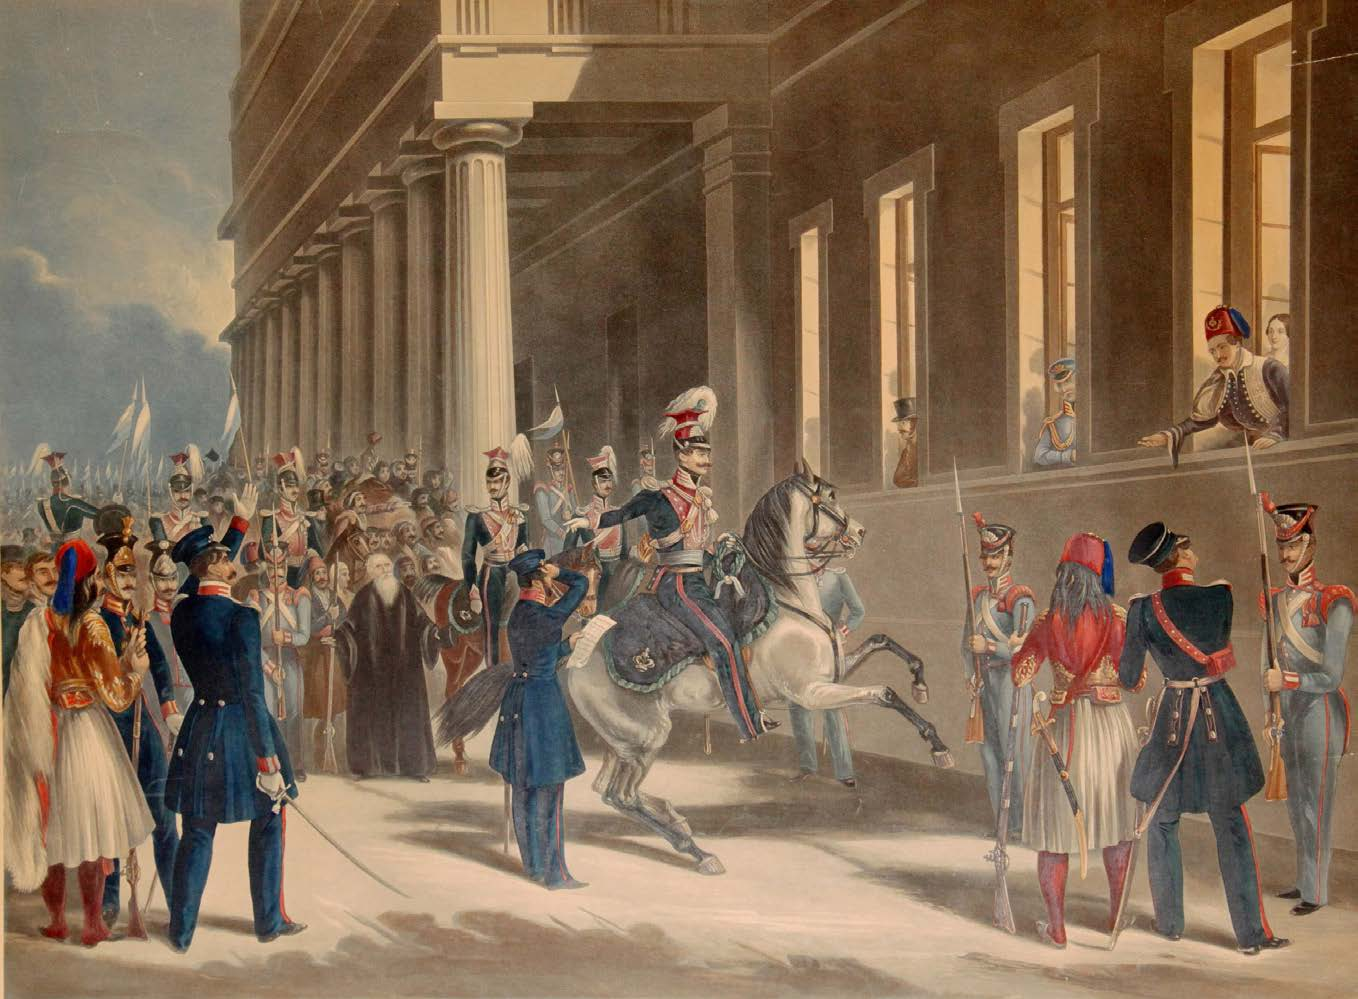 Η άφιξη του Όθωνα και των βαυαρών αντιβασιλέων (25 Ιανουαρίου 1833) σηματοδοτεί την περίοδο της απόλυτης μοναρχίας, η οποία κατάργησε τις συνταγματικές κατακτήσεις της Επανάστασης.